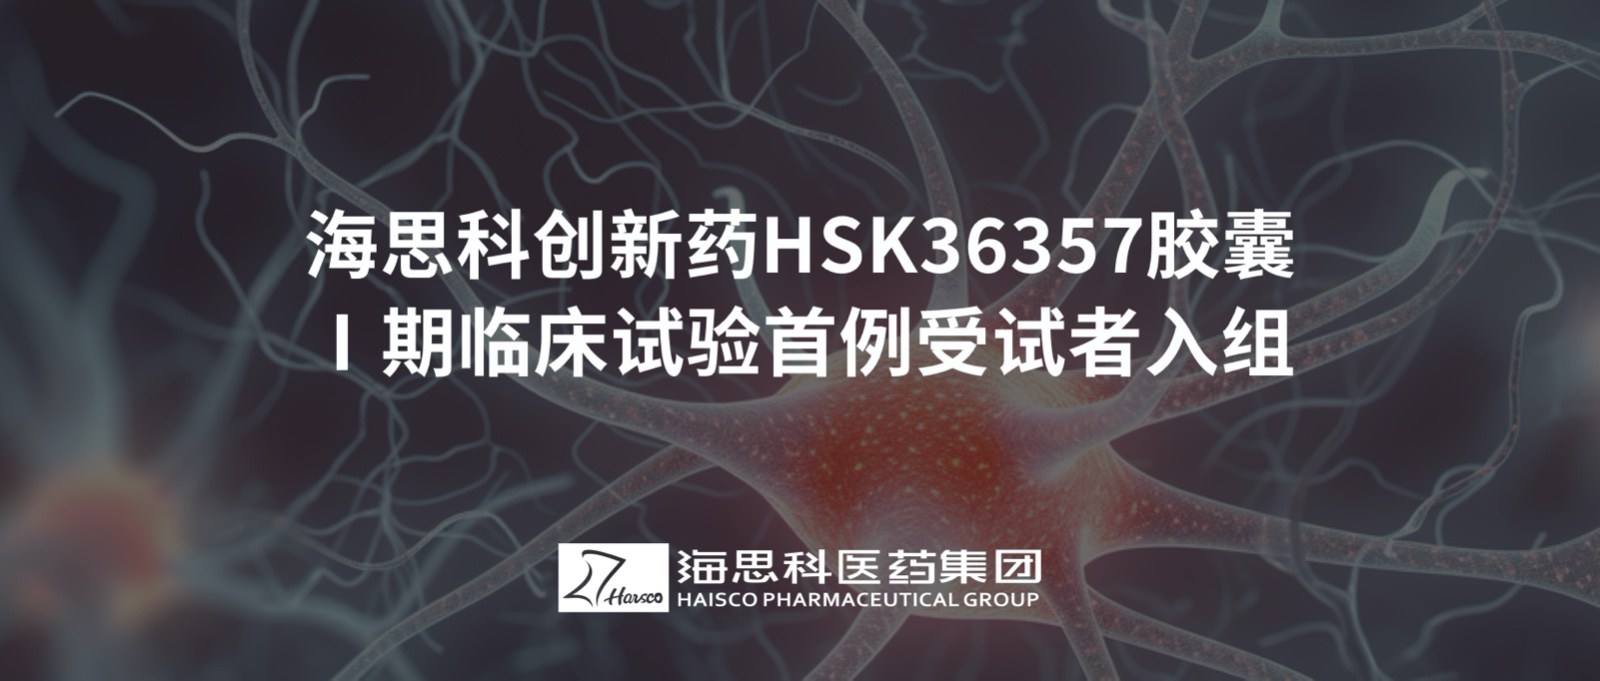 老哥集团HSK36357胶囊Ⅰ期临床试验首例受试者入组